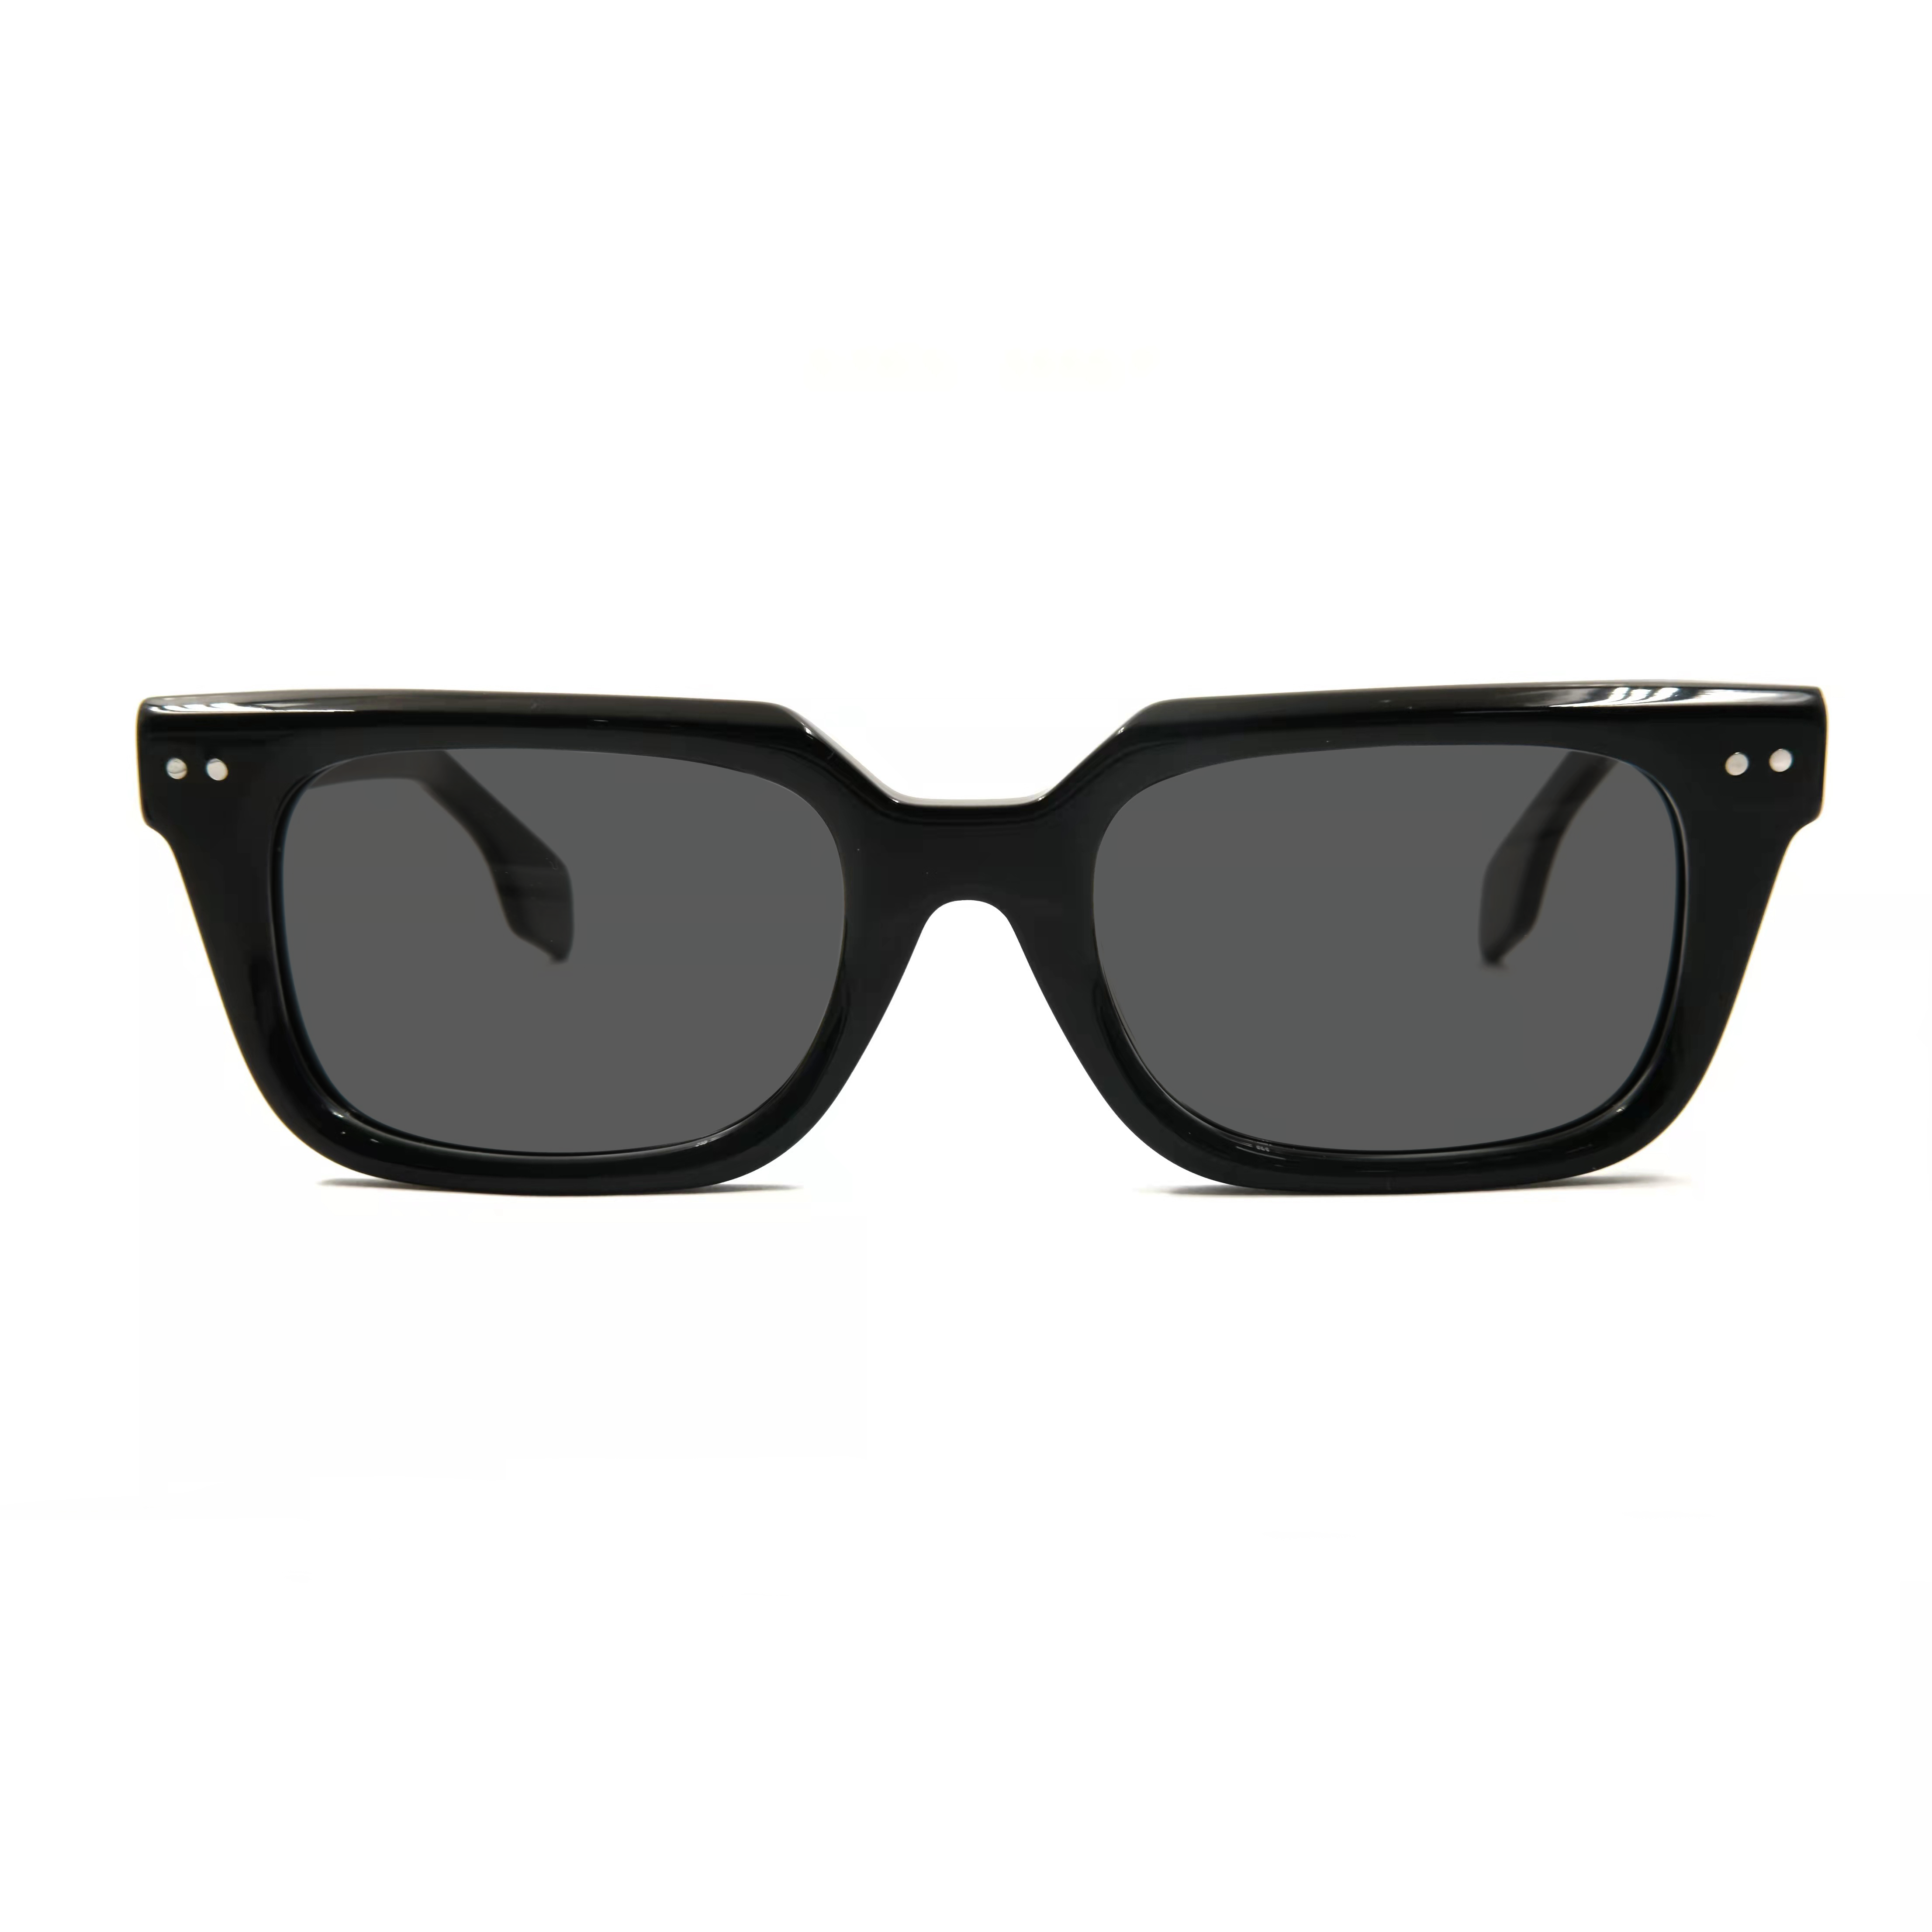 Gafas de sol cuadradas de acetato de gran tamaño Las mejores empresas de gafas Diseñe sus propias gafas de sol con logotipo